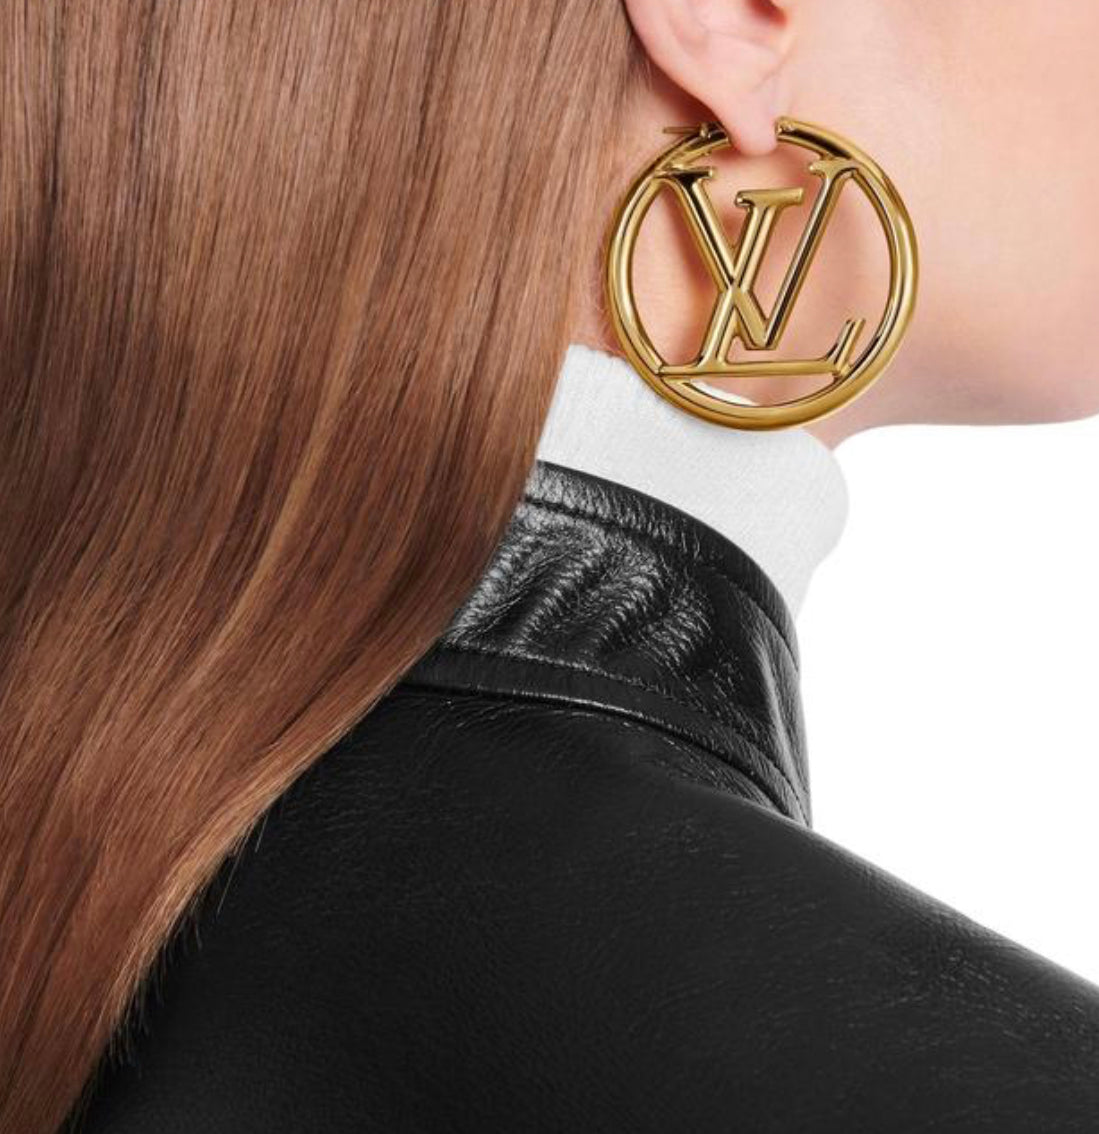 Louis Vuitton Earrings Hoops